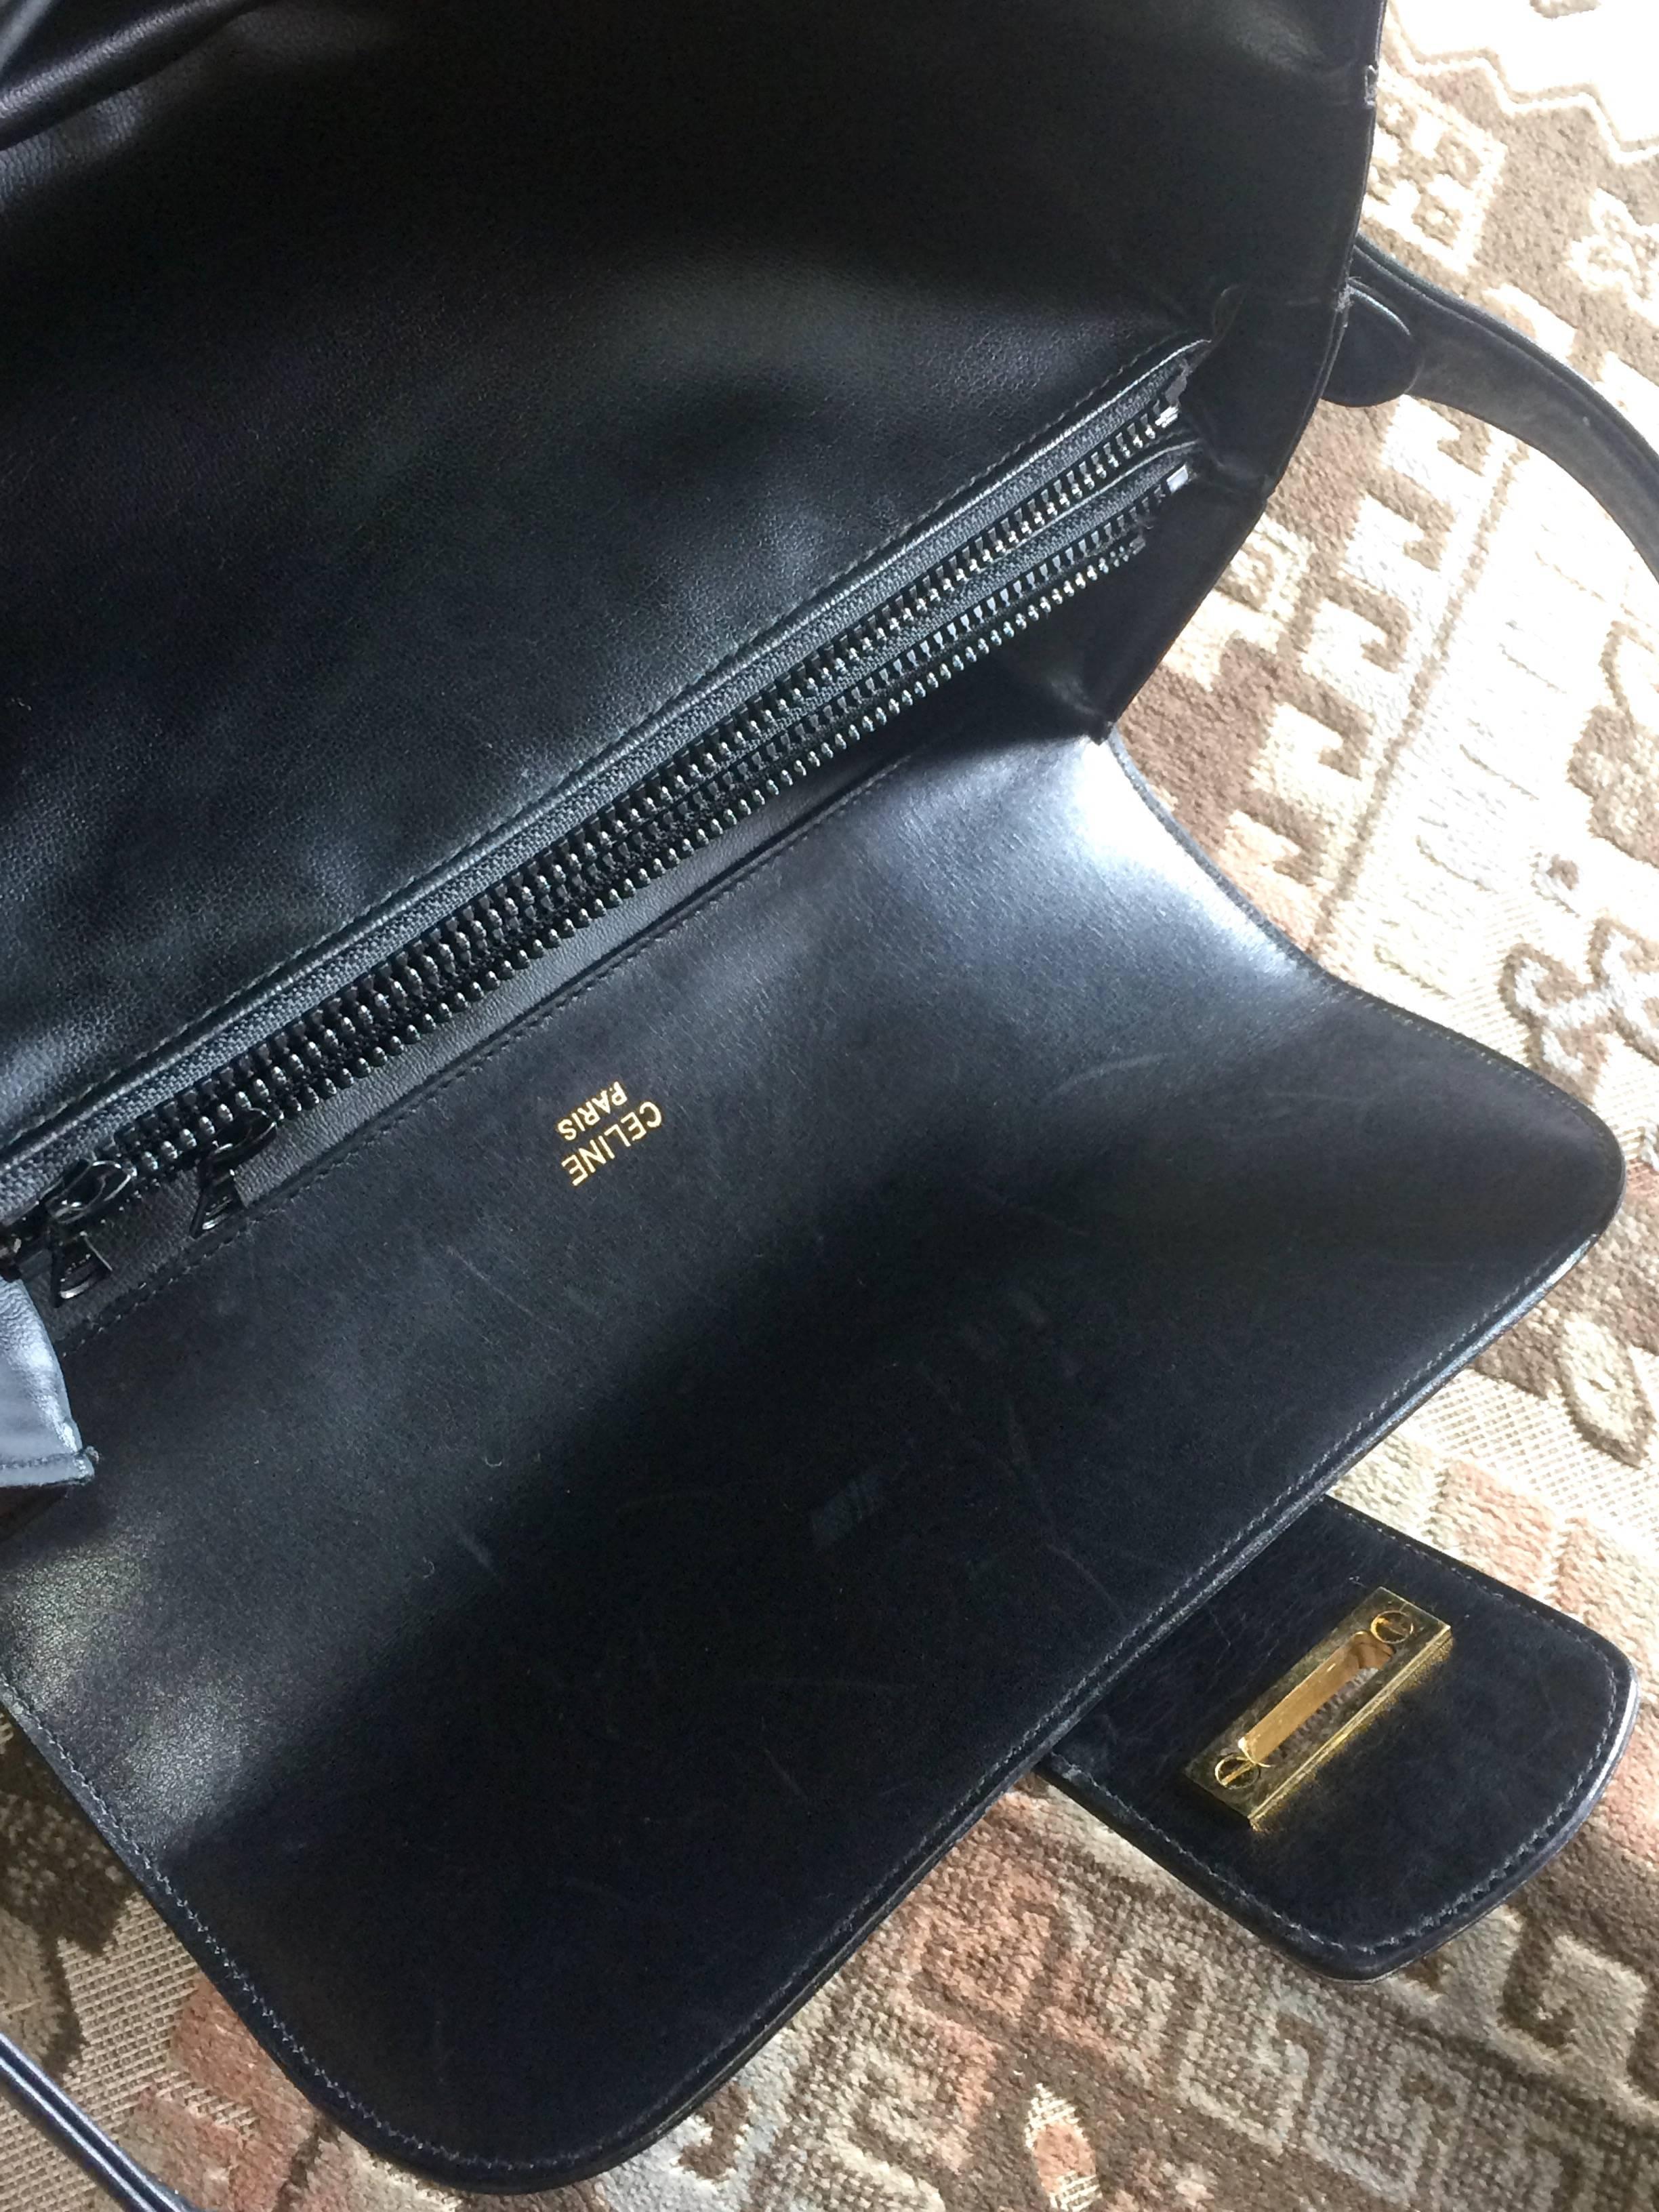 Vintage Celine black leather classic shoulder bag with golden logo closure. 4